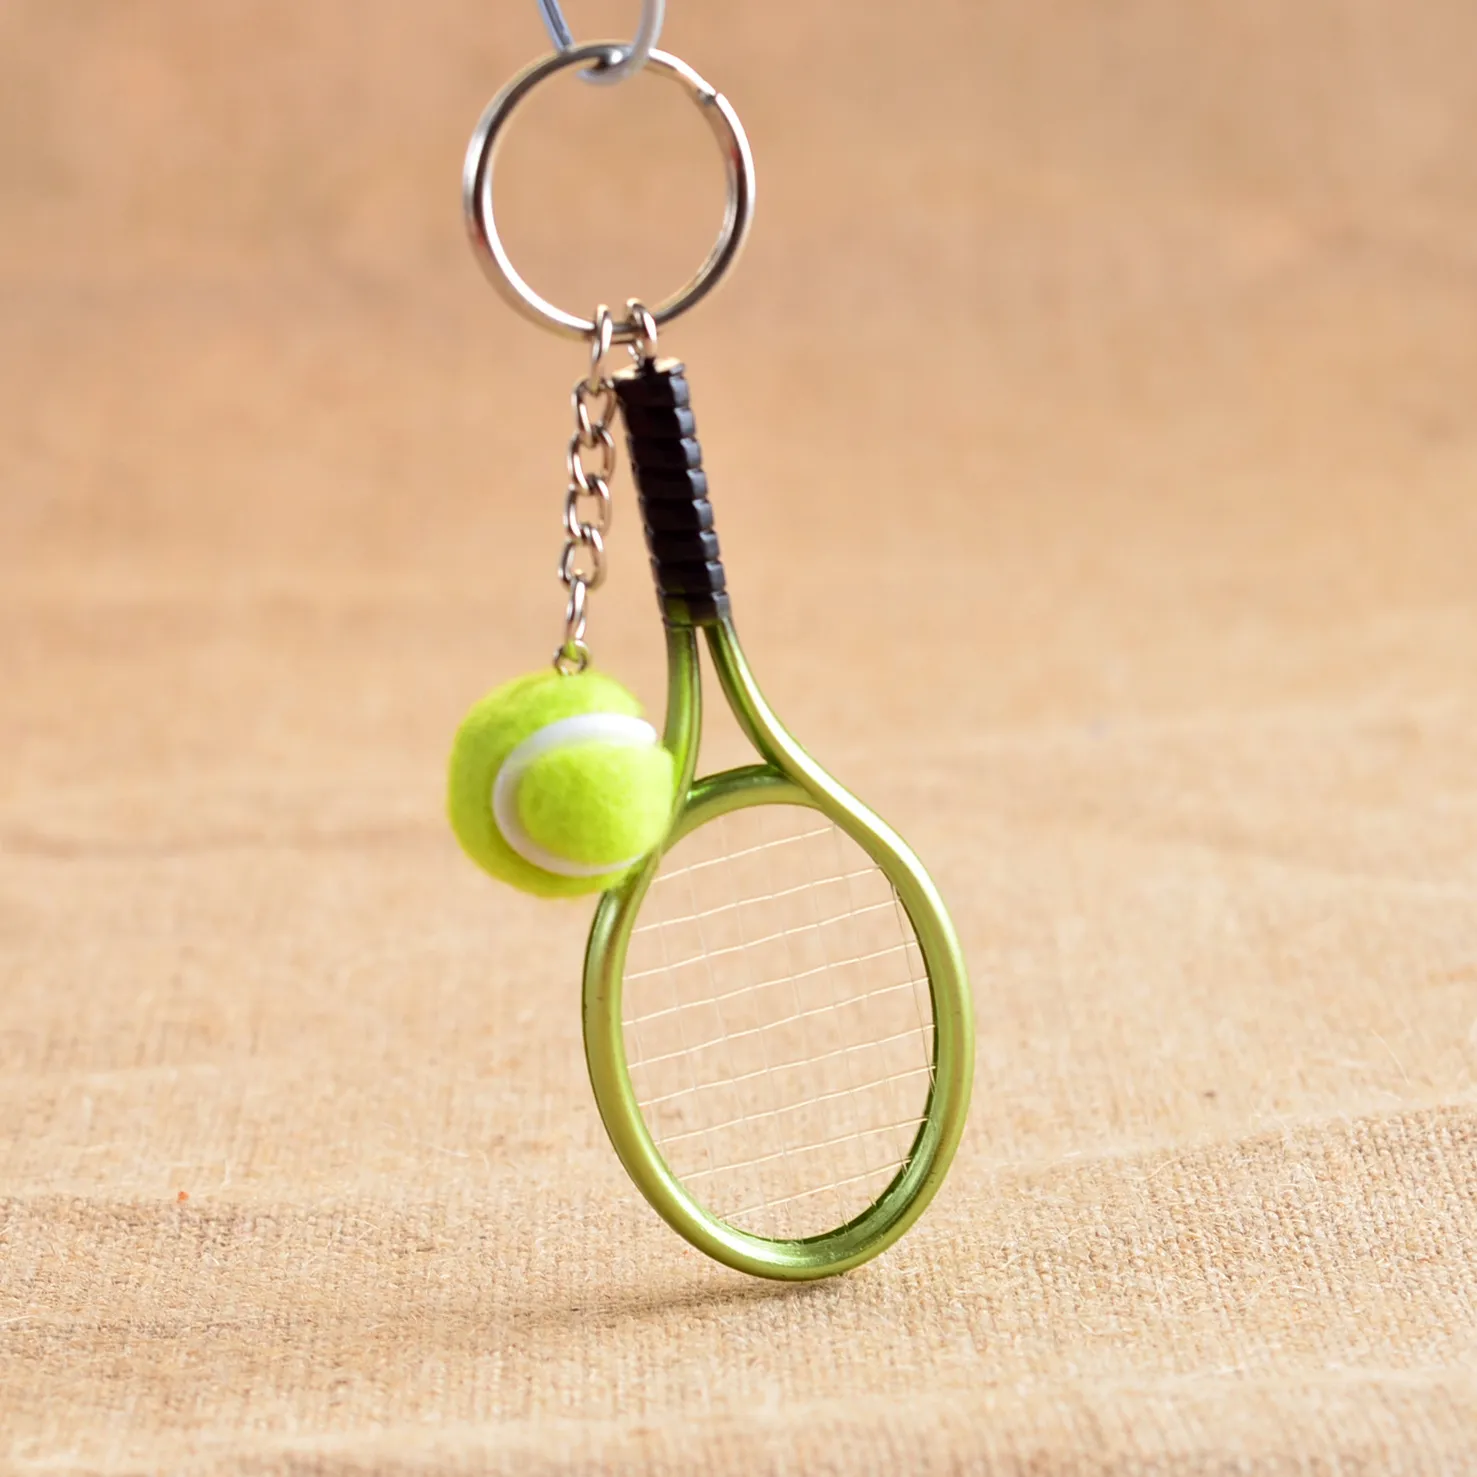 Yeni varış Mini tenis raketi anahtarlık yaratıcı kişilik tanıtım küçük hediyeler R158 Sanat ve El Sanatları mix sipariş ihtiyaçlarınıza olarak